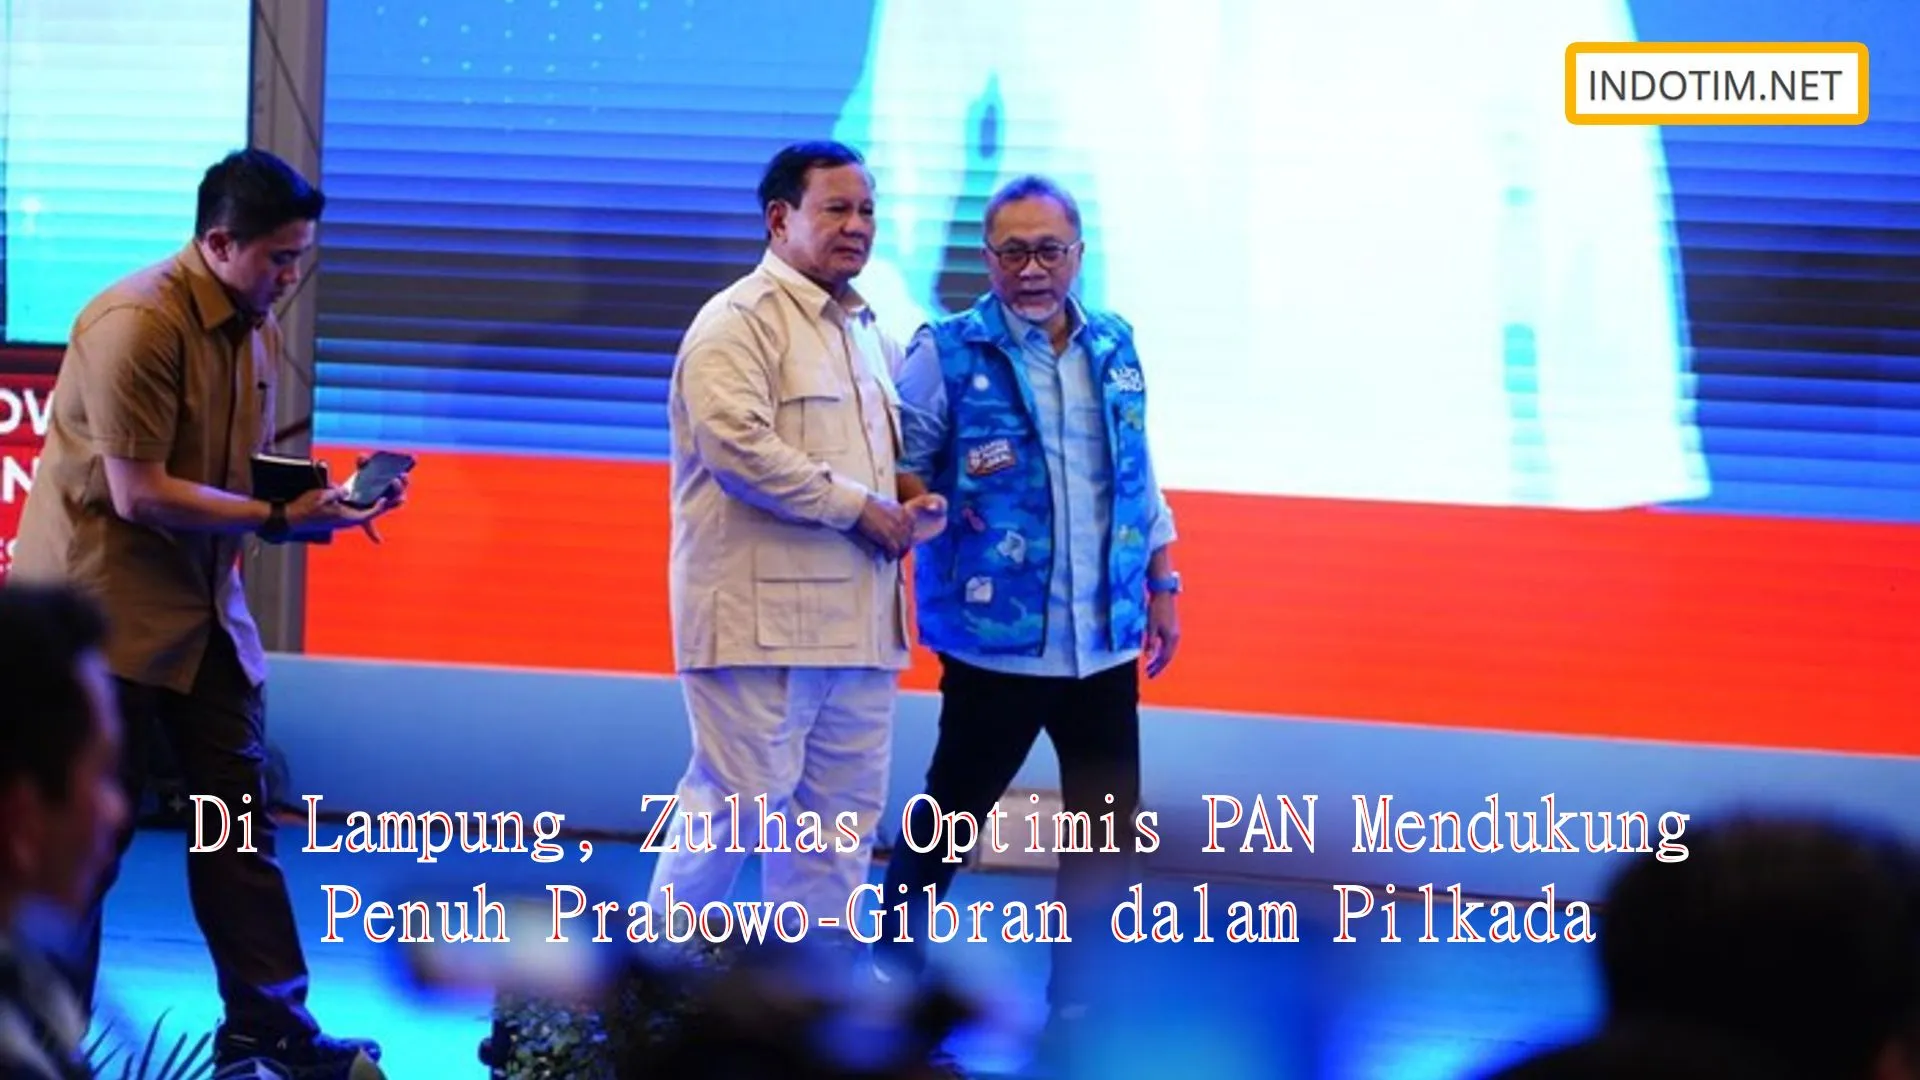 Di Lampung, Zulhas Optimis PAN Mendukung Penuh Prabowo-Gibran dalam Pilkada